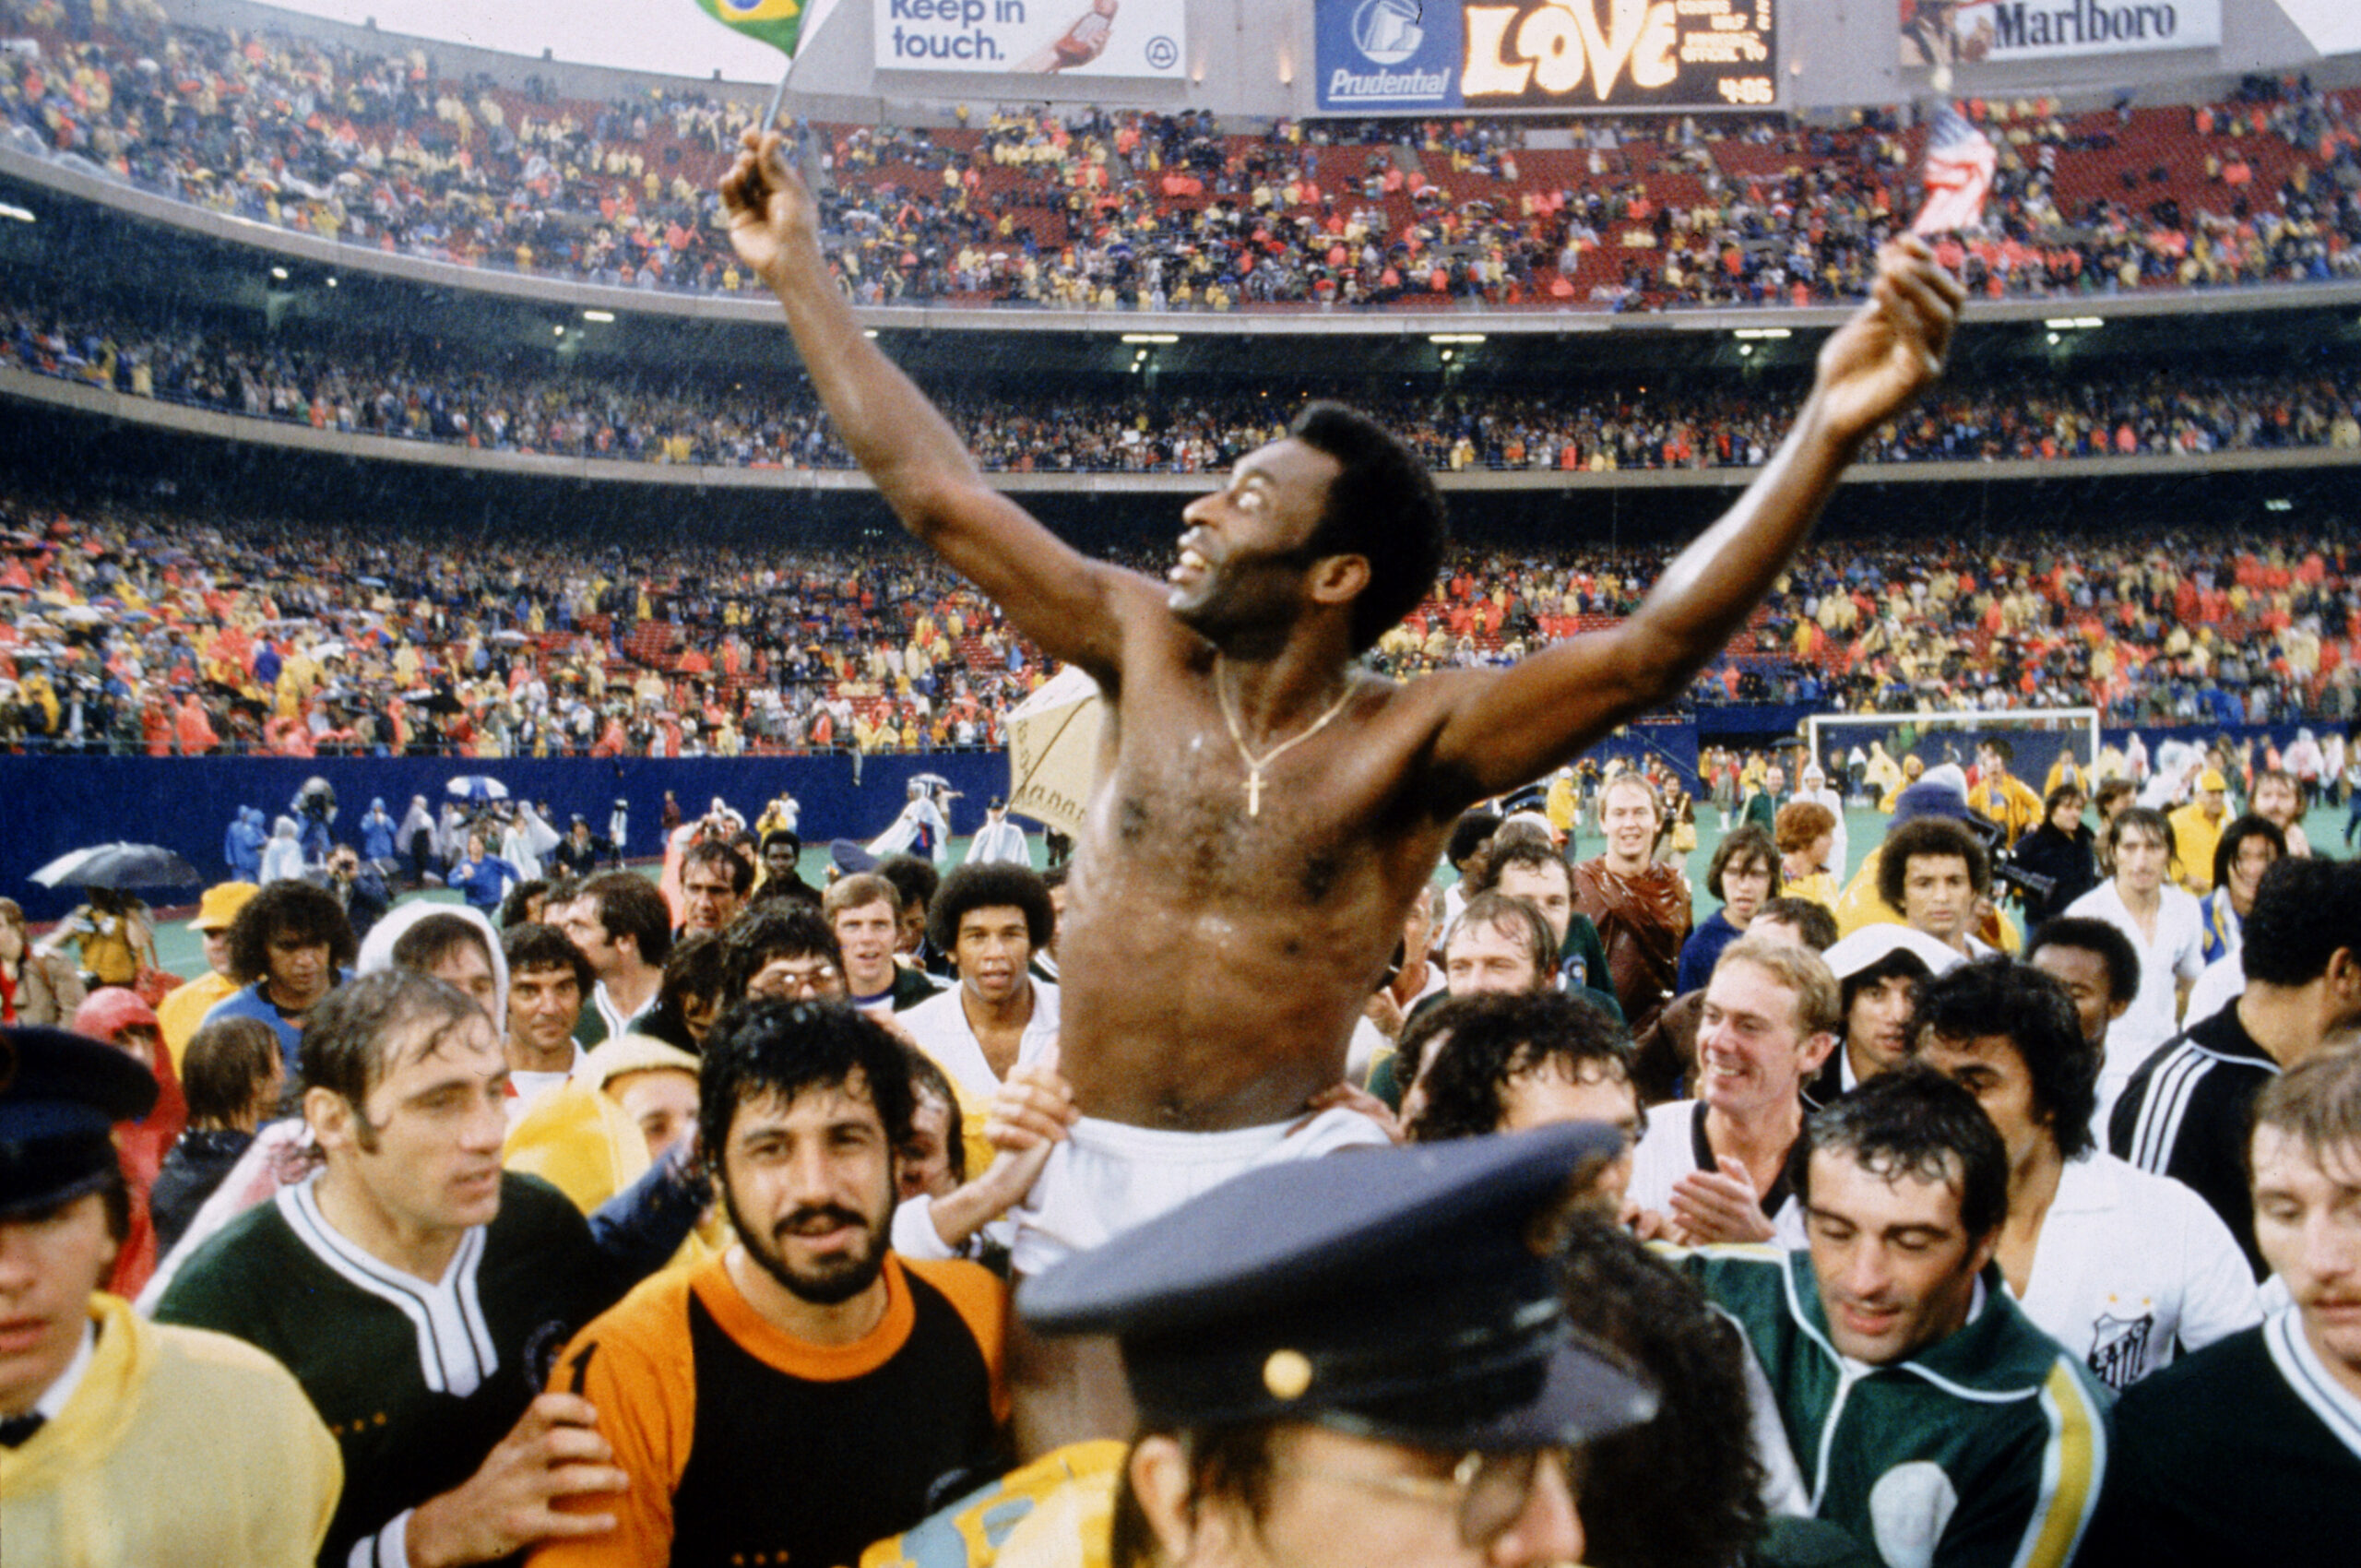 Addio a Pelé “o Rei” del calcio